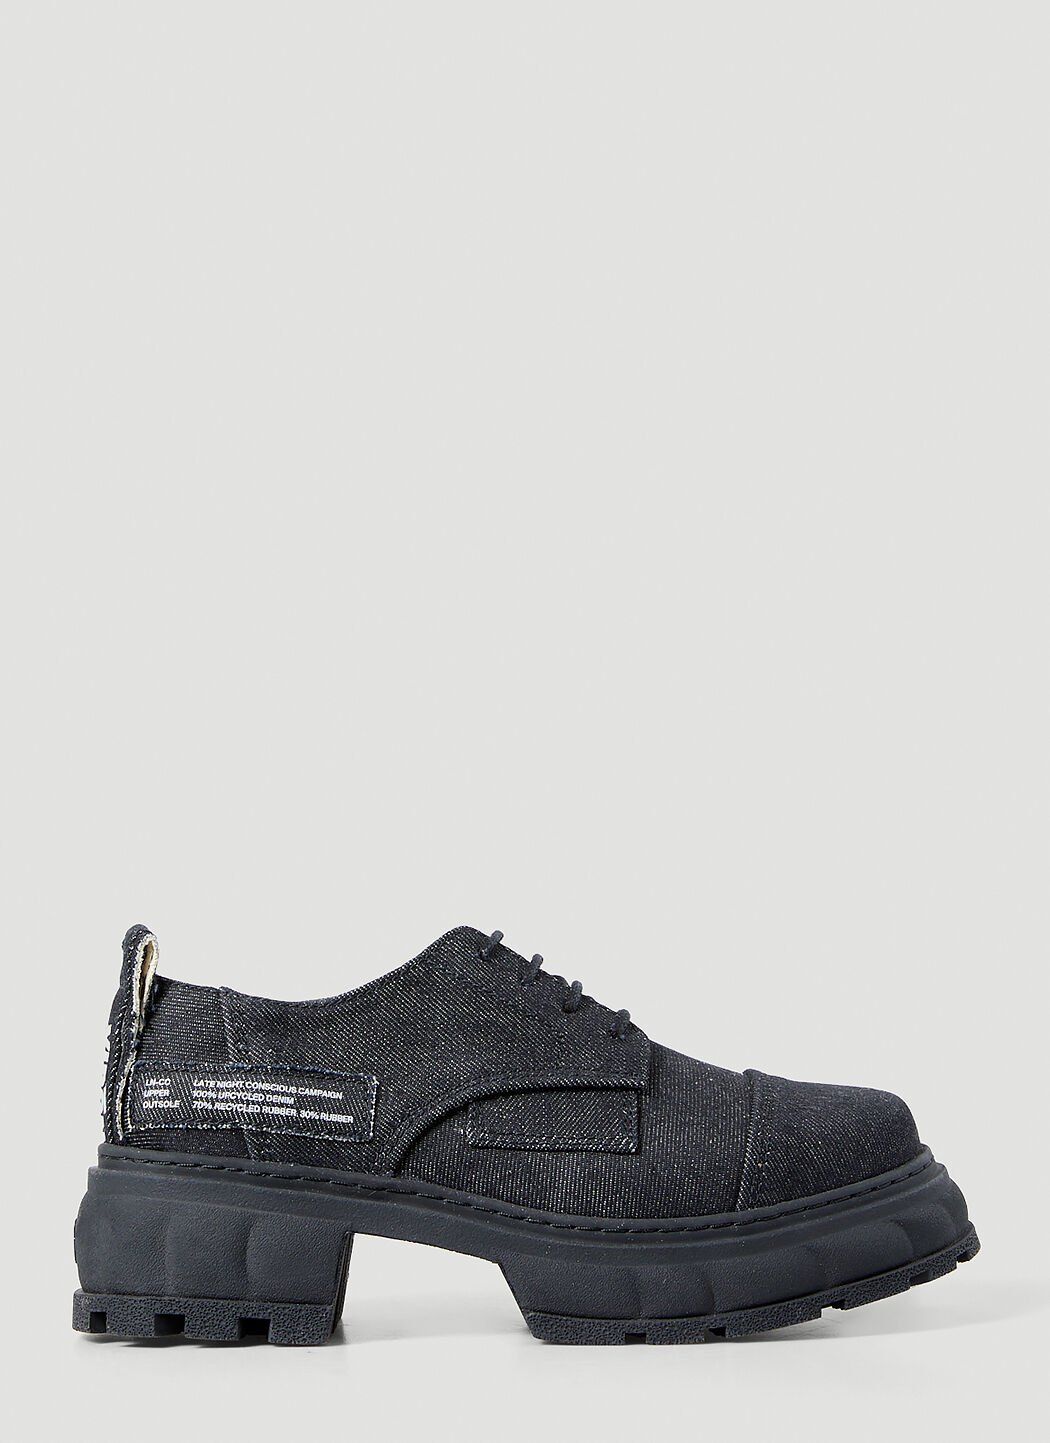 Gucci x LN-CC Alter Denim Shoes 黑色 guc0255064